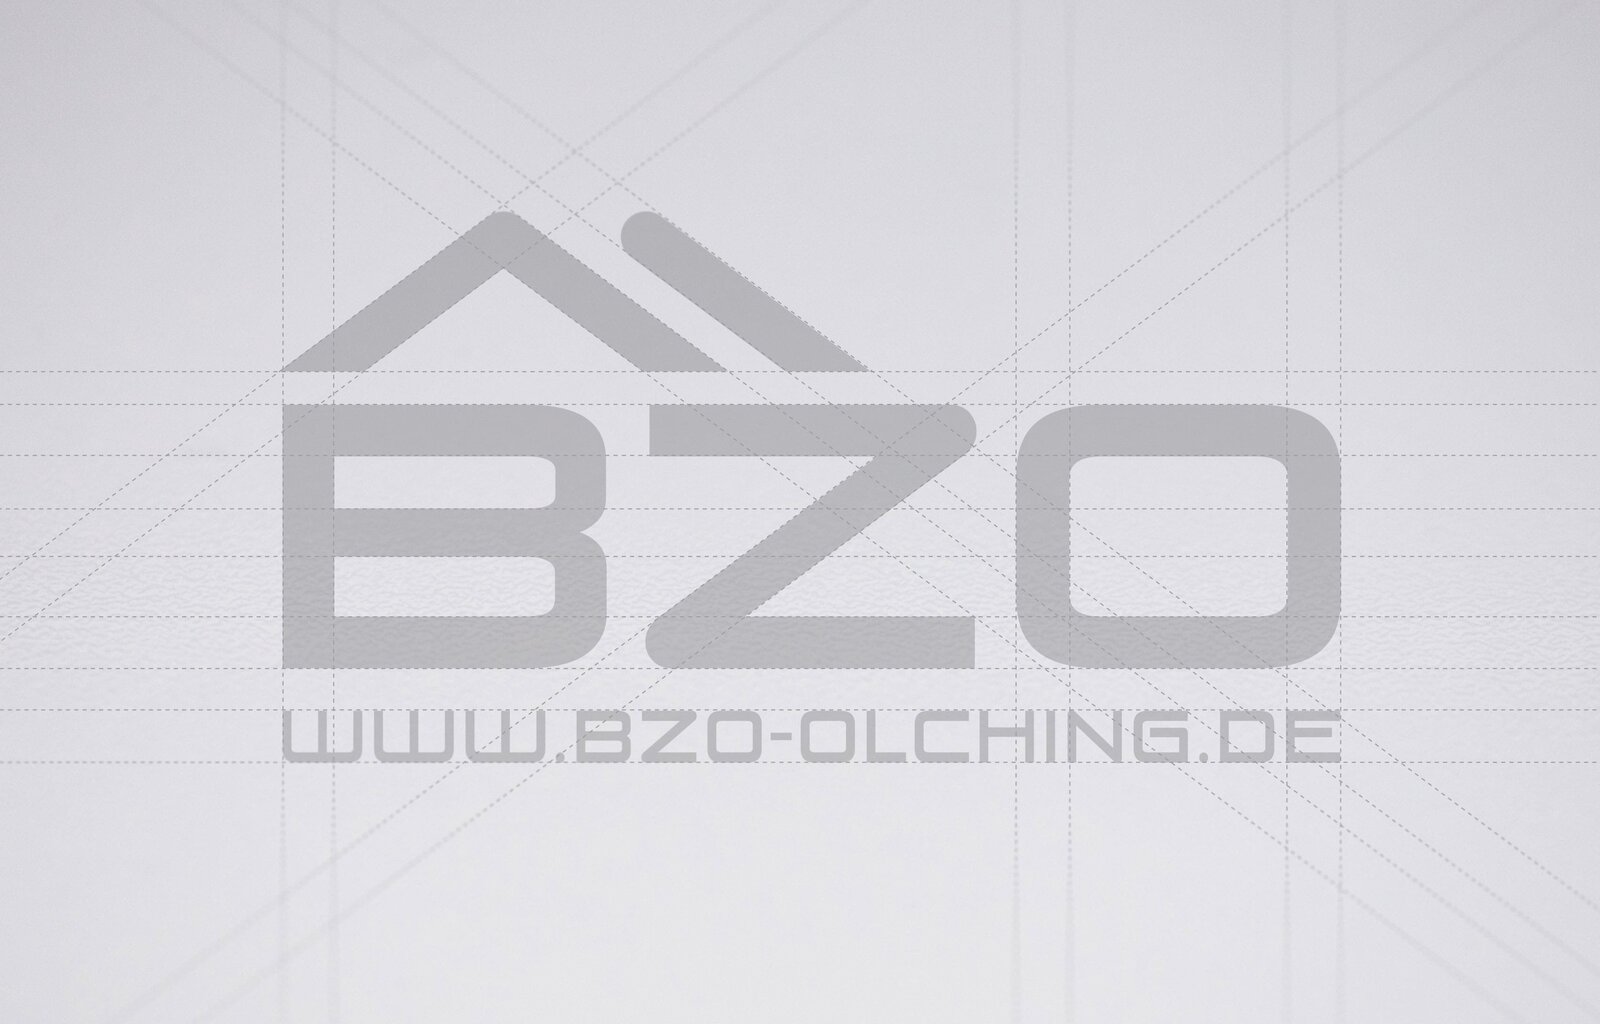 Die Marken Design Agentur hat den Markenaufritt des BZO komplett neu gestaltet.